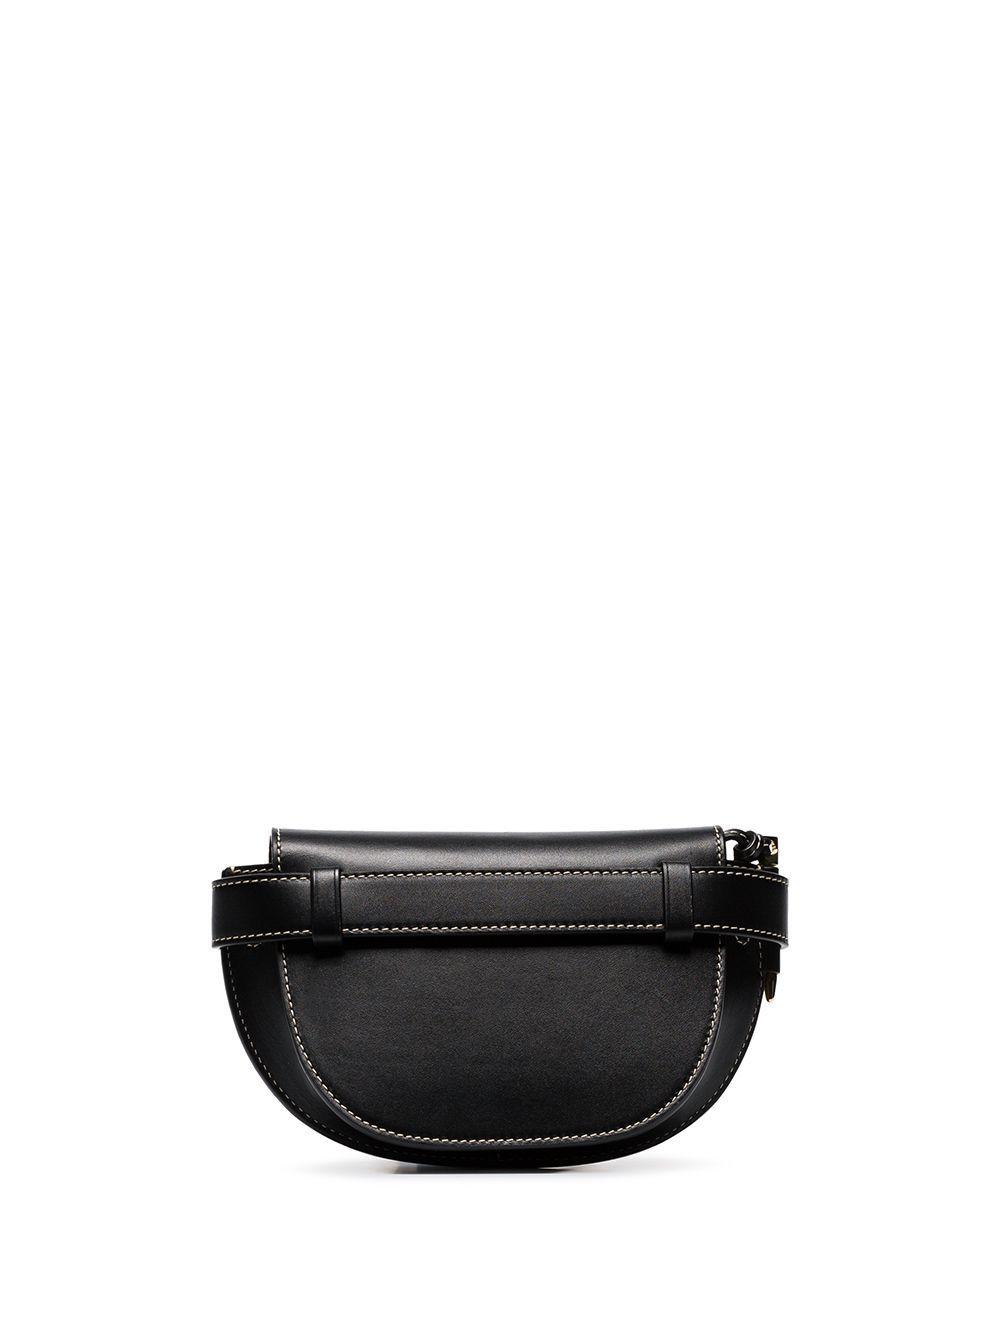 Loewe Leather Mini Gate Mini Belt Bag in Black - Lyst